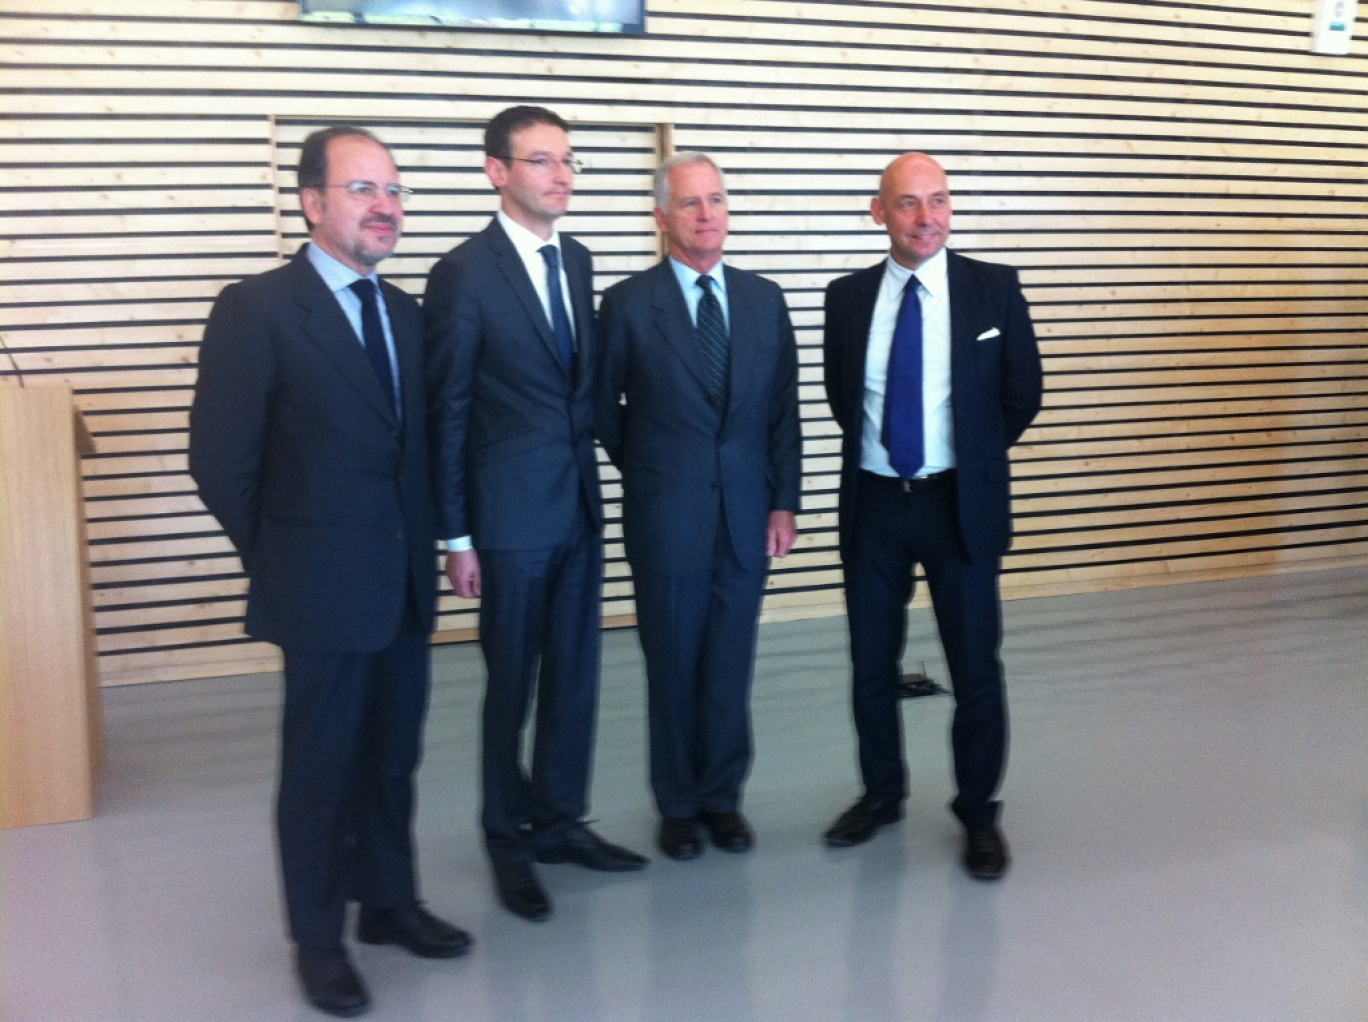 De gauche à droite, Fabrizio Giust, Patrick Gomel, Paul Rahill et M.Romanelli.